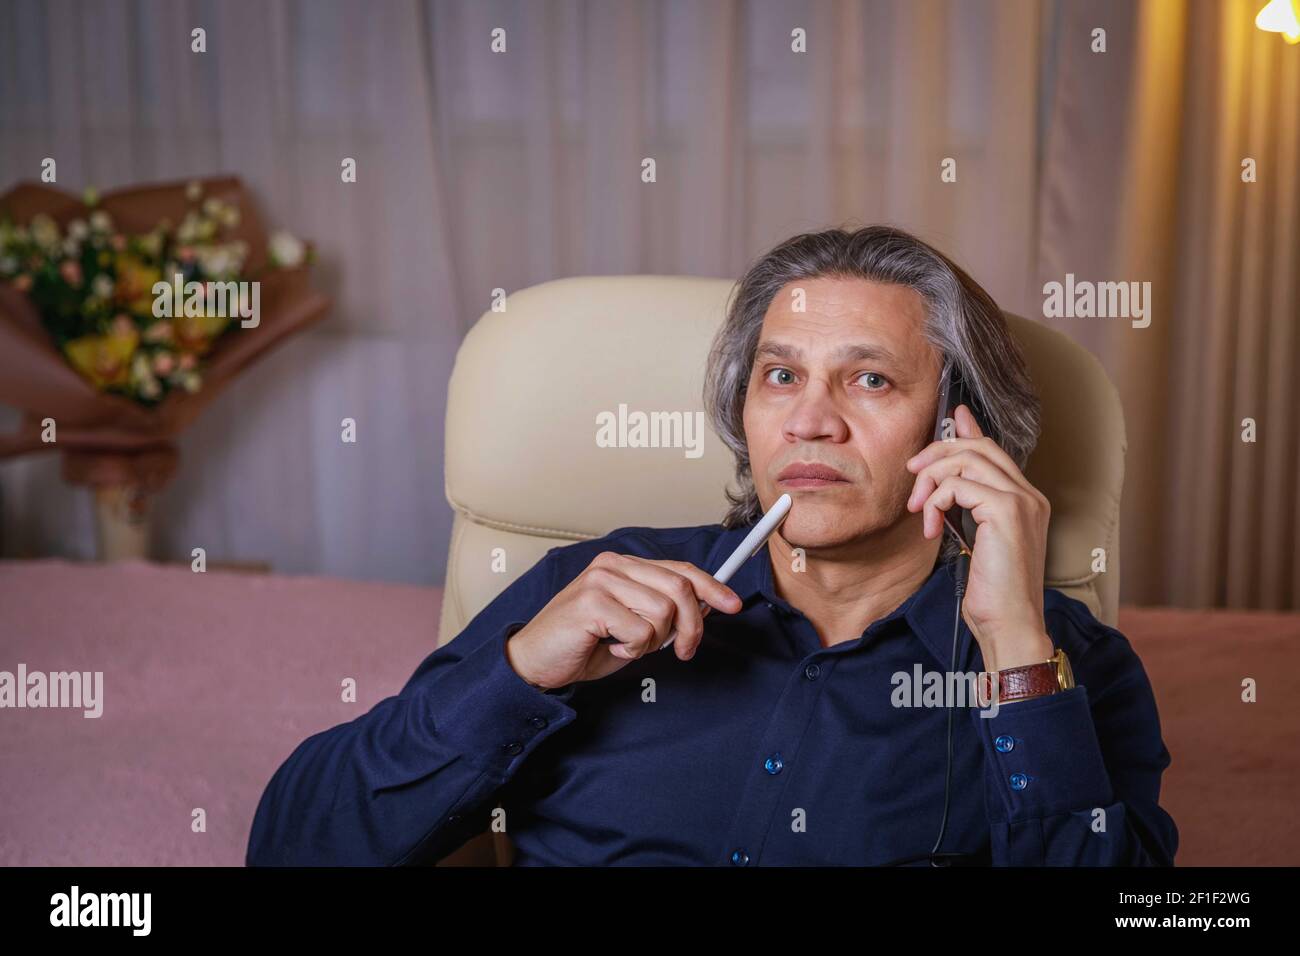 Un homme de 50 ans aux cheveux longs parle au téléphone à la maison, assis sur une chaise. Délice relaxant. Banque D'Images